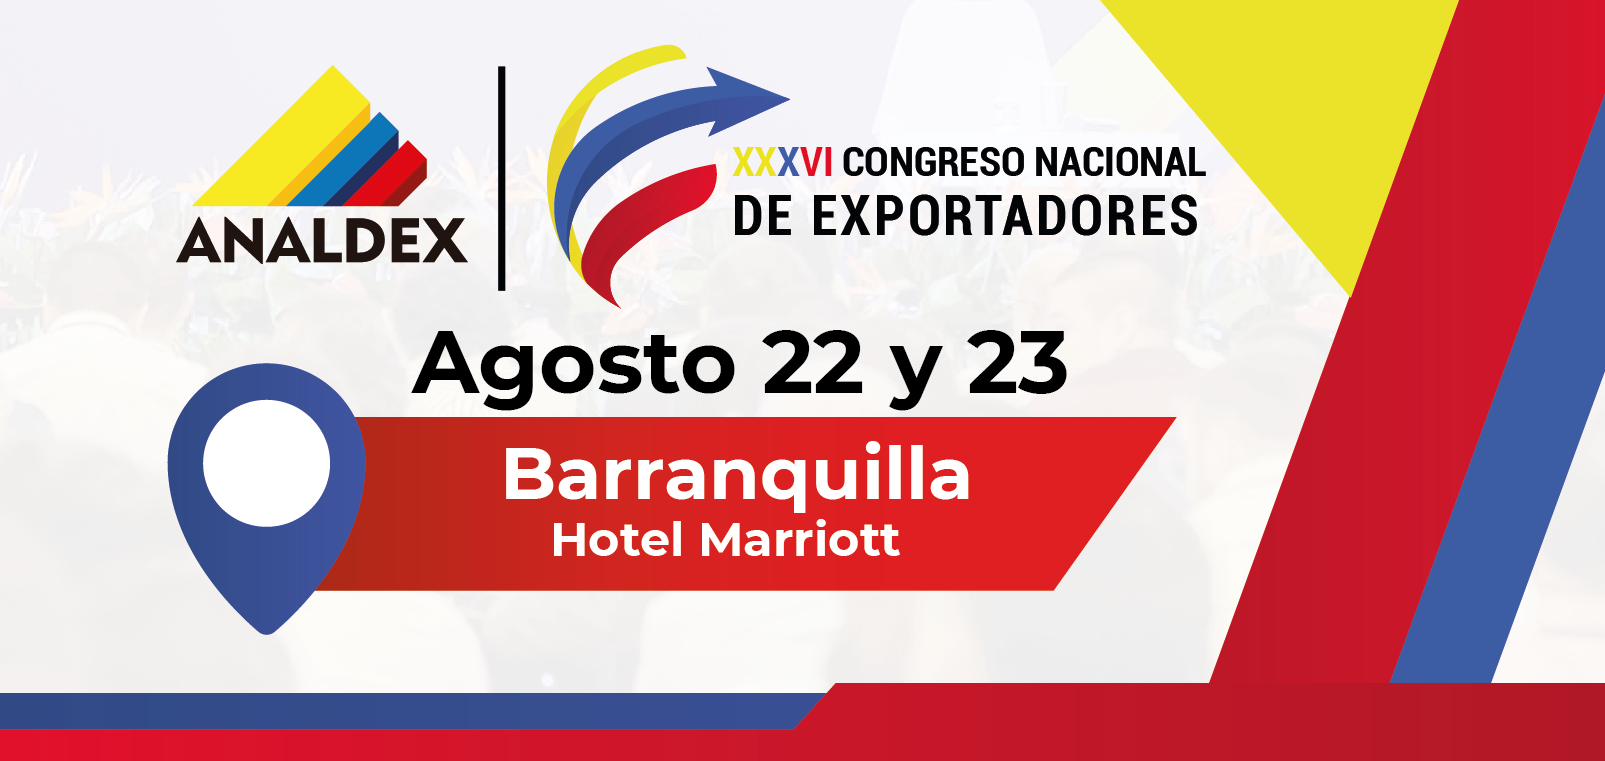 XXXVI Congreso Nacional de Exportadores